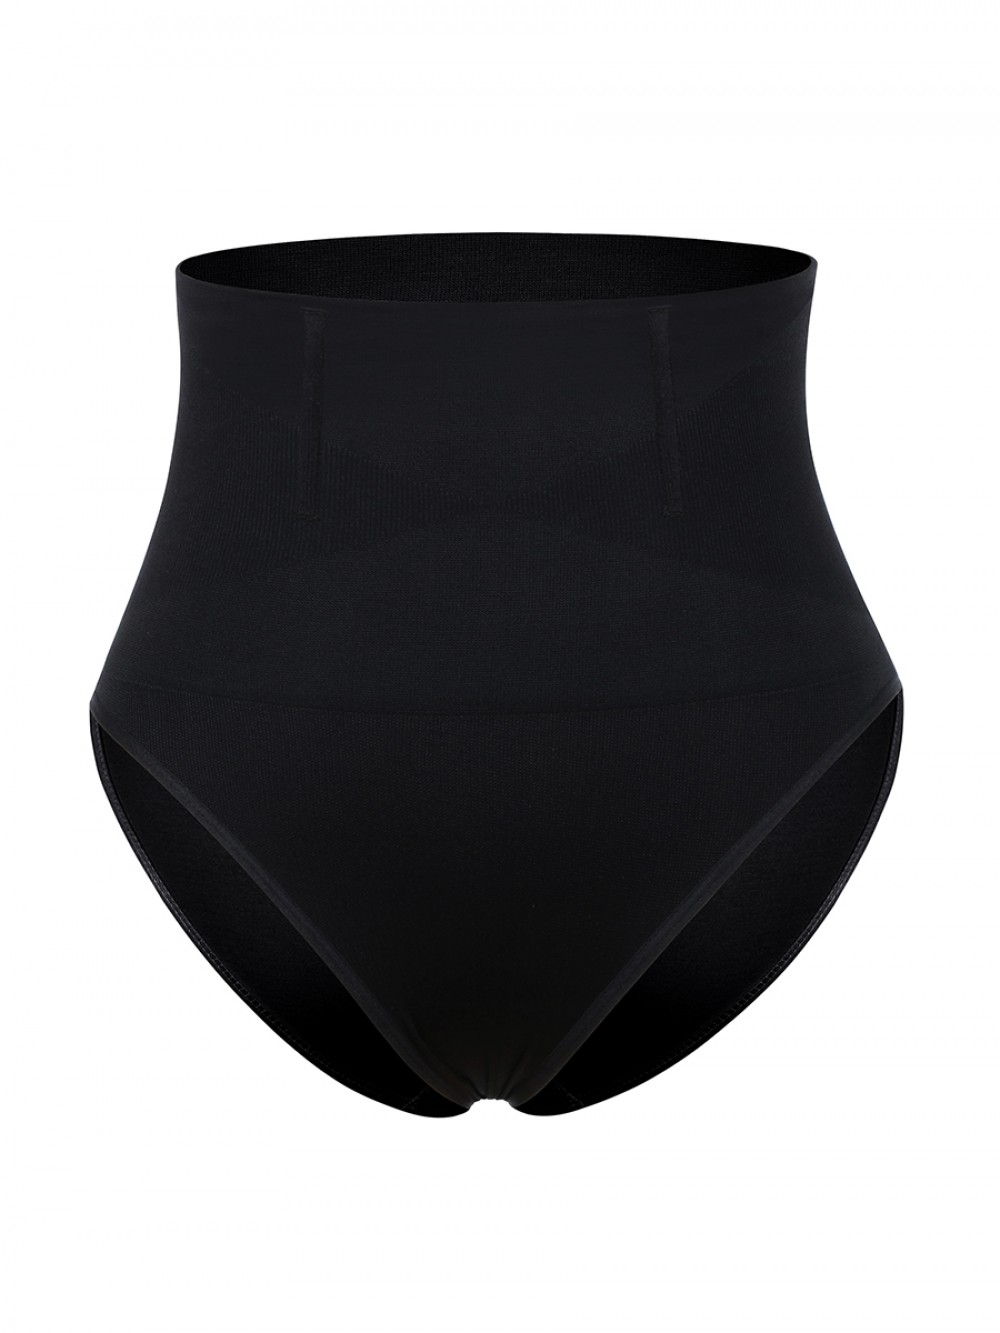 Black Seamless Plus Size Butt Lifter High Waist Perfect Curves